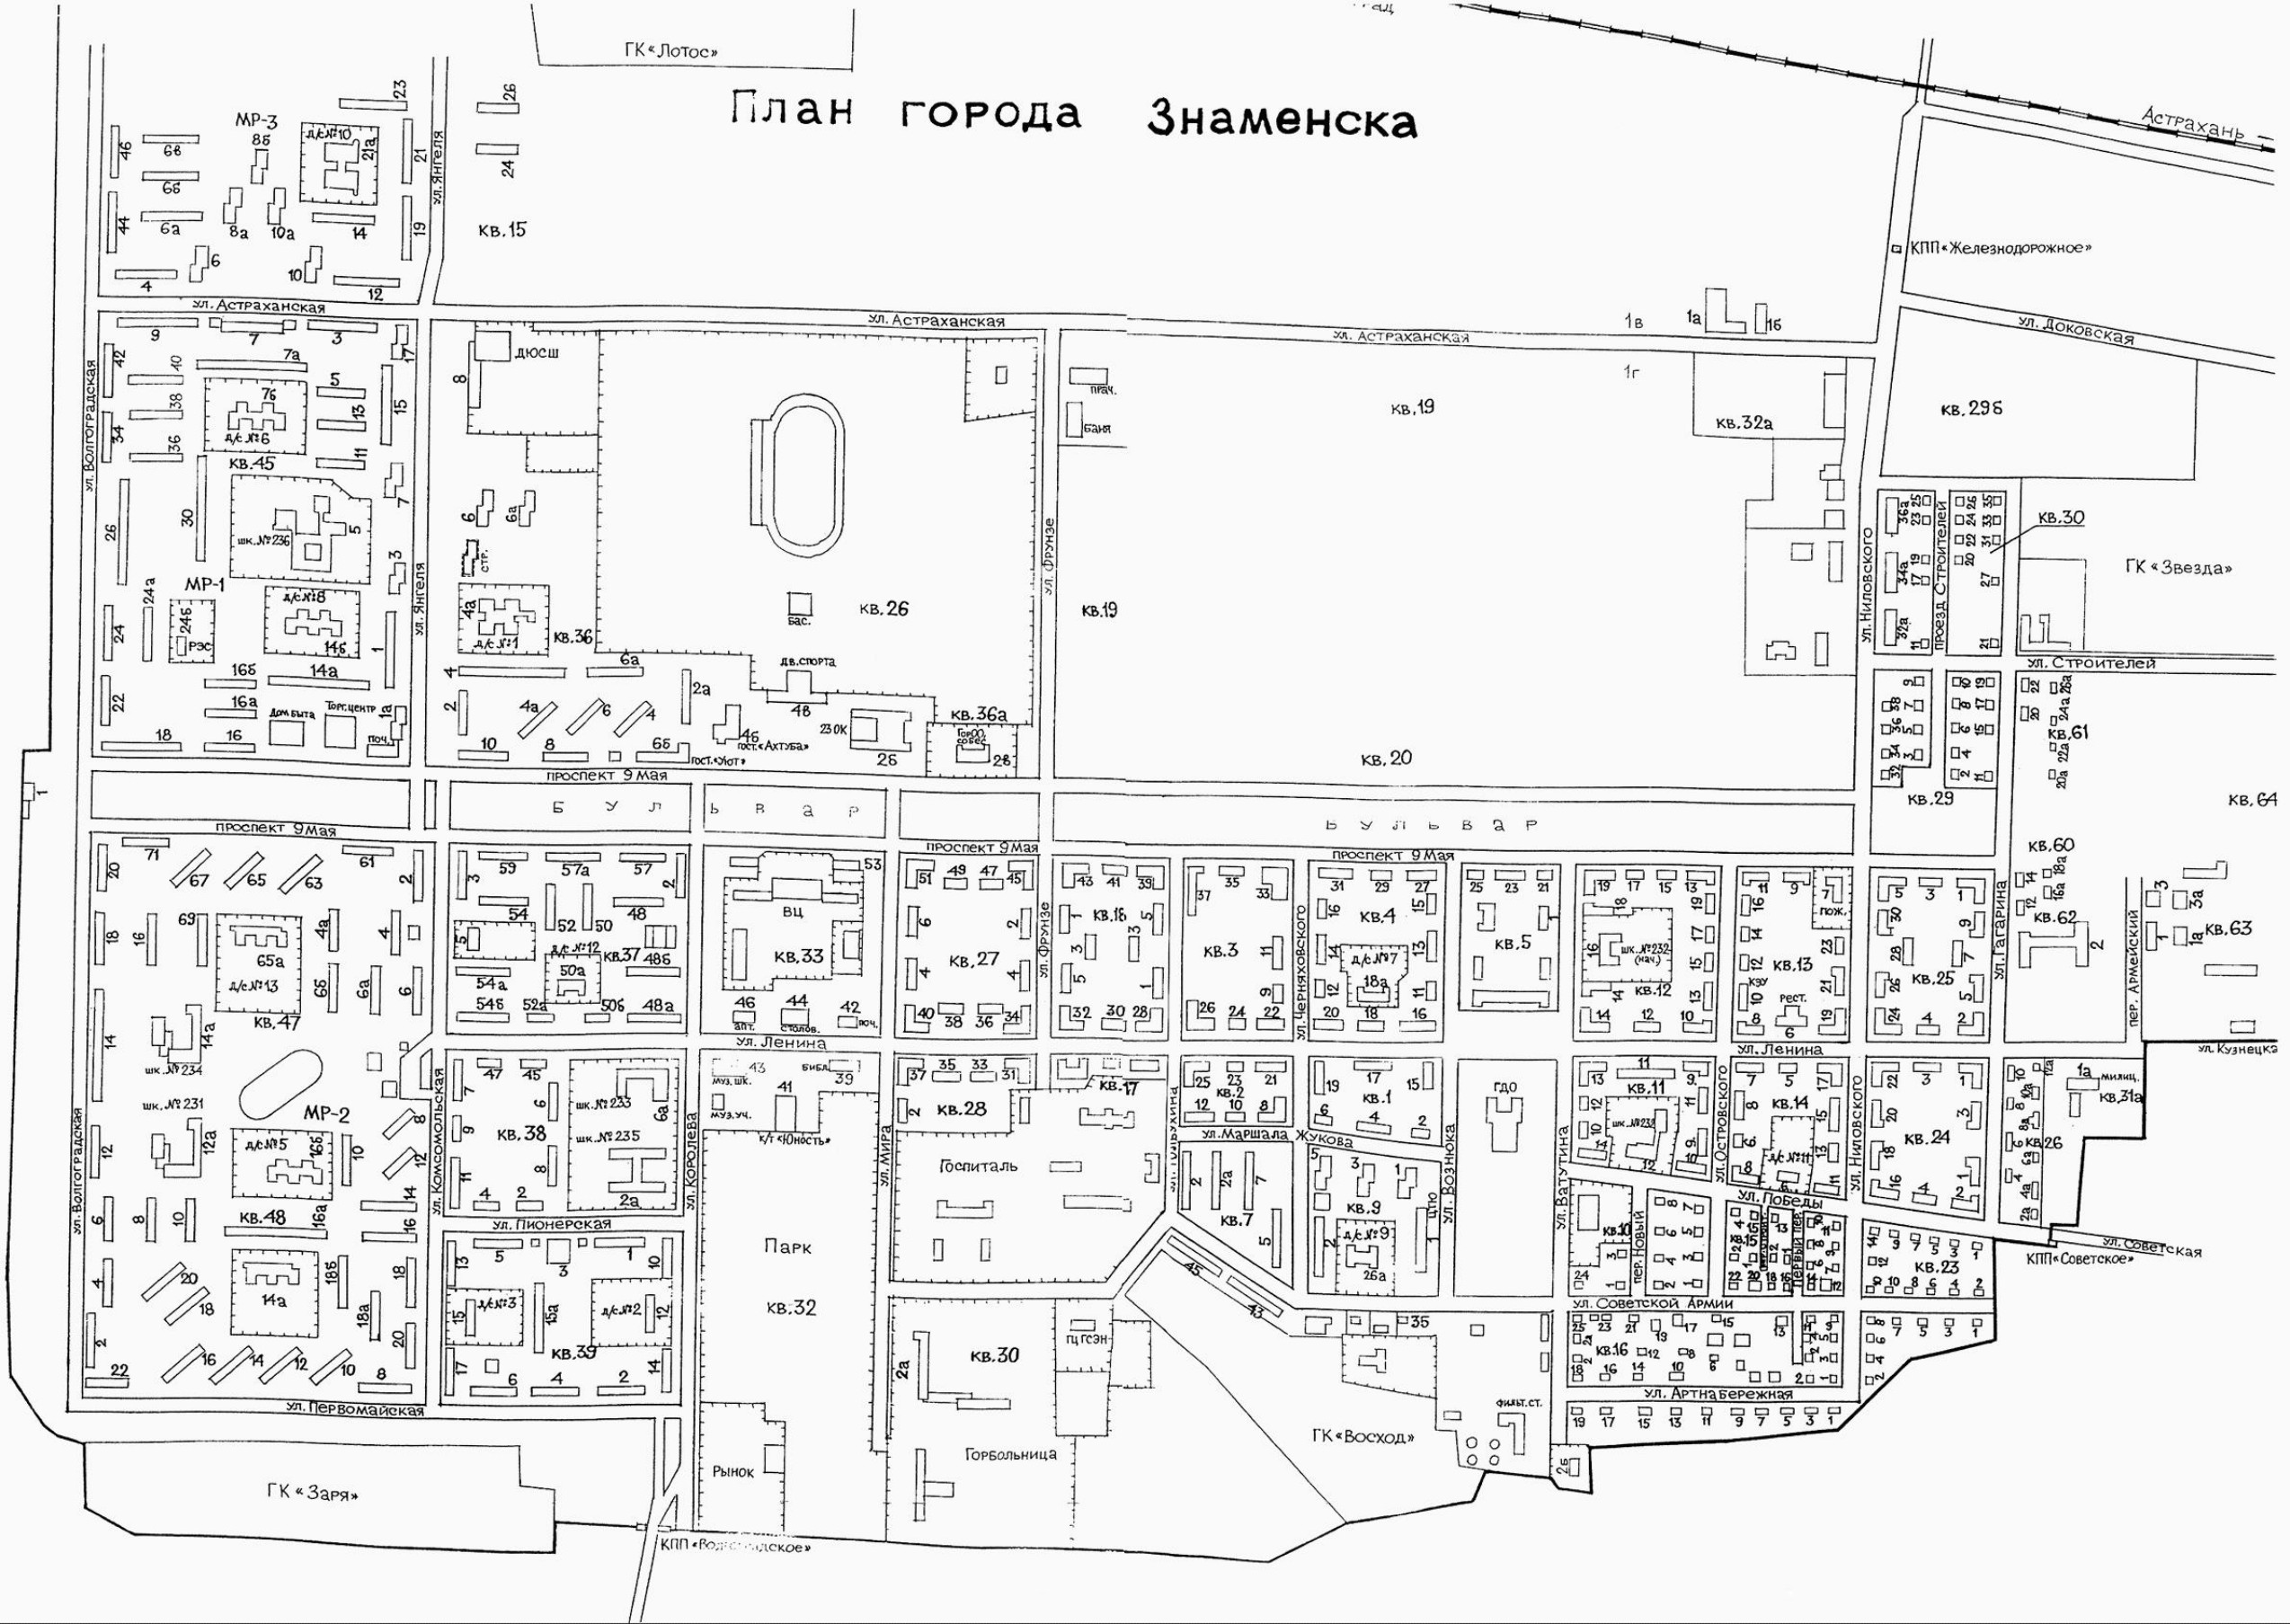 Карта города Знаменск